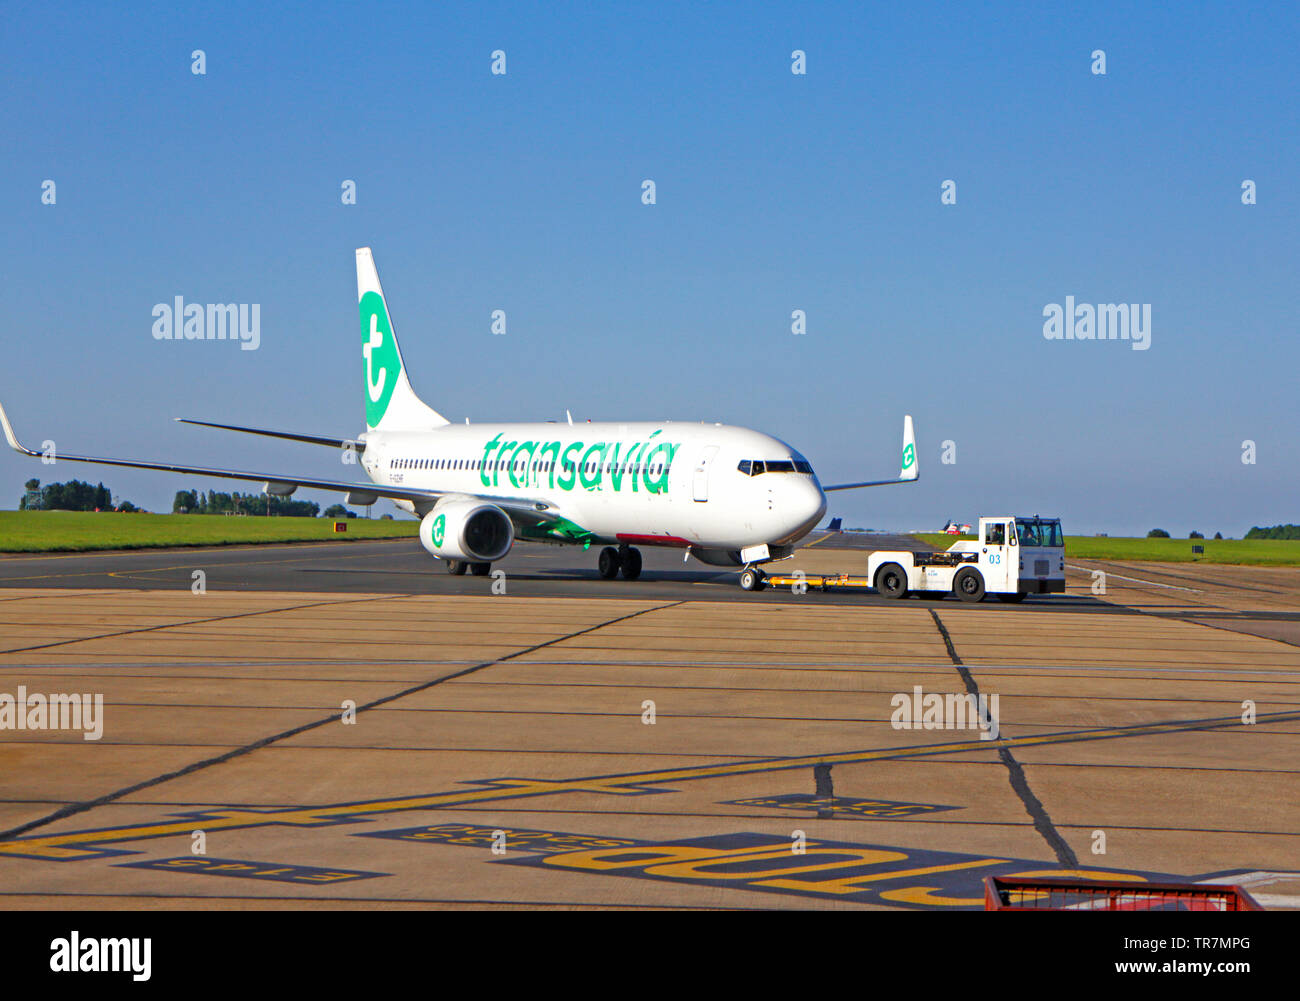 Un Boeing 737-800 de Transavia étant déplacé de la piste à l'aéroport international de Norwich, Norfolk, Angleterre, Royaume-Uni, Europe. Banque D'Images